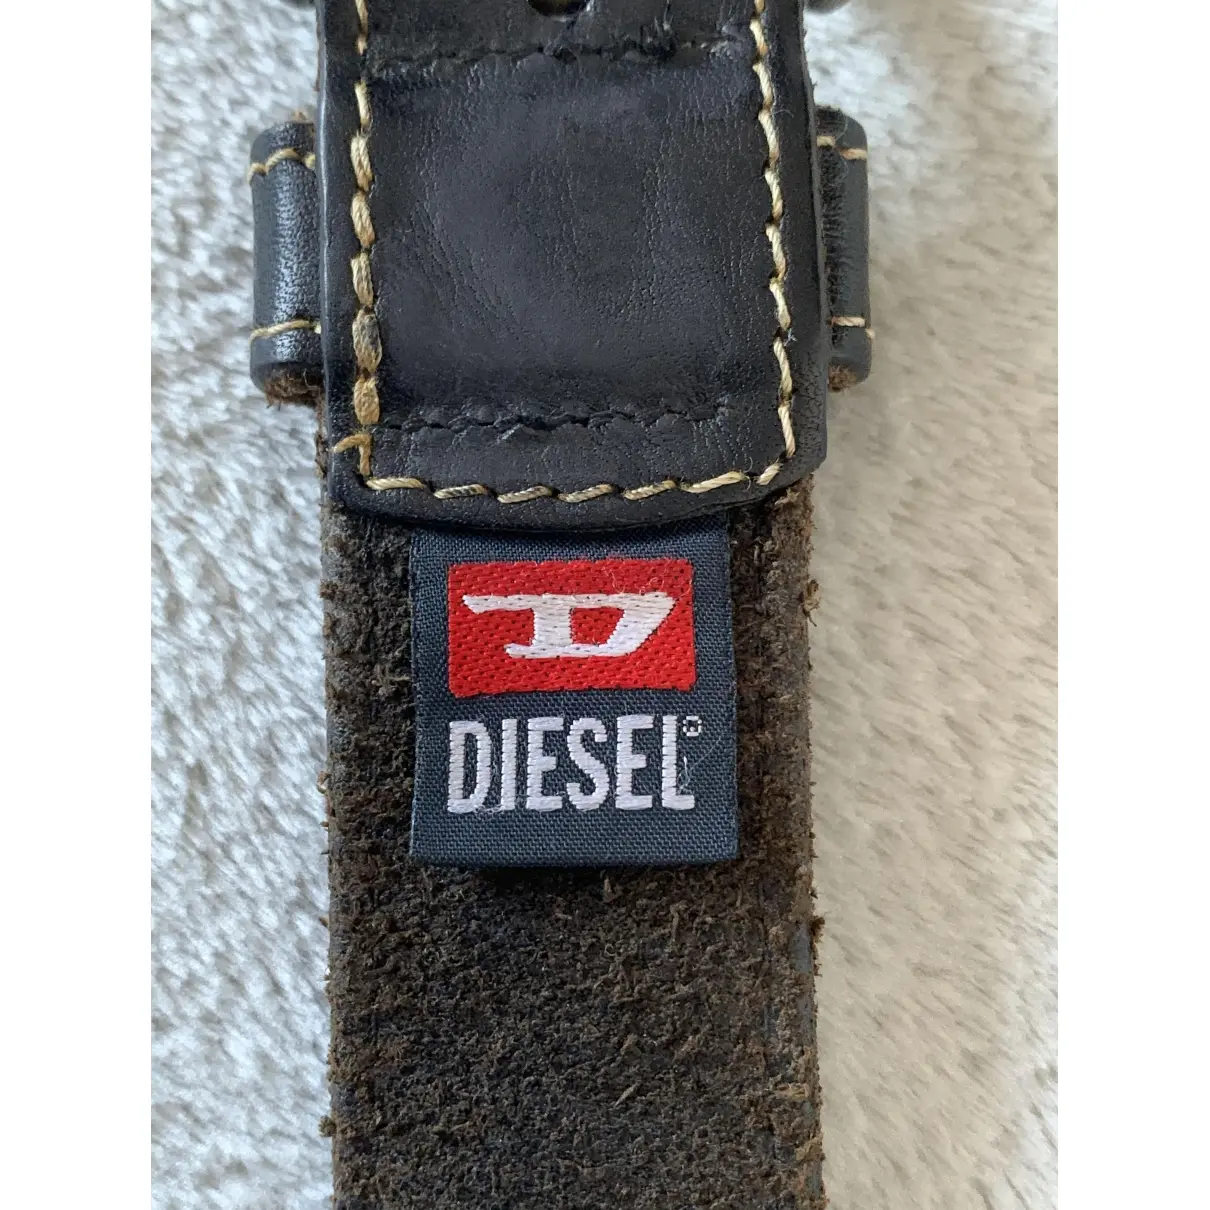 Buy Diesel Leather belt online - Vintage